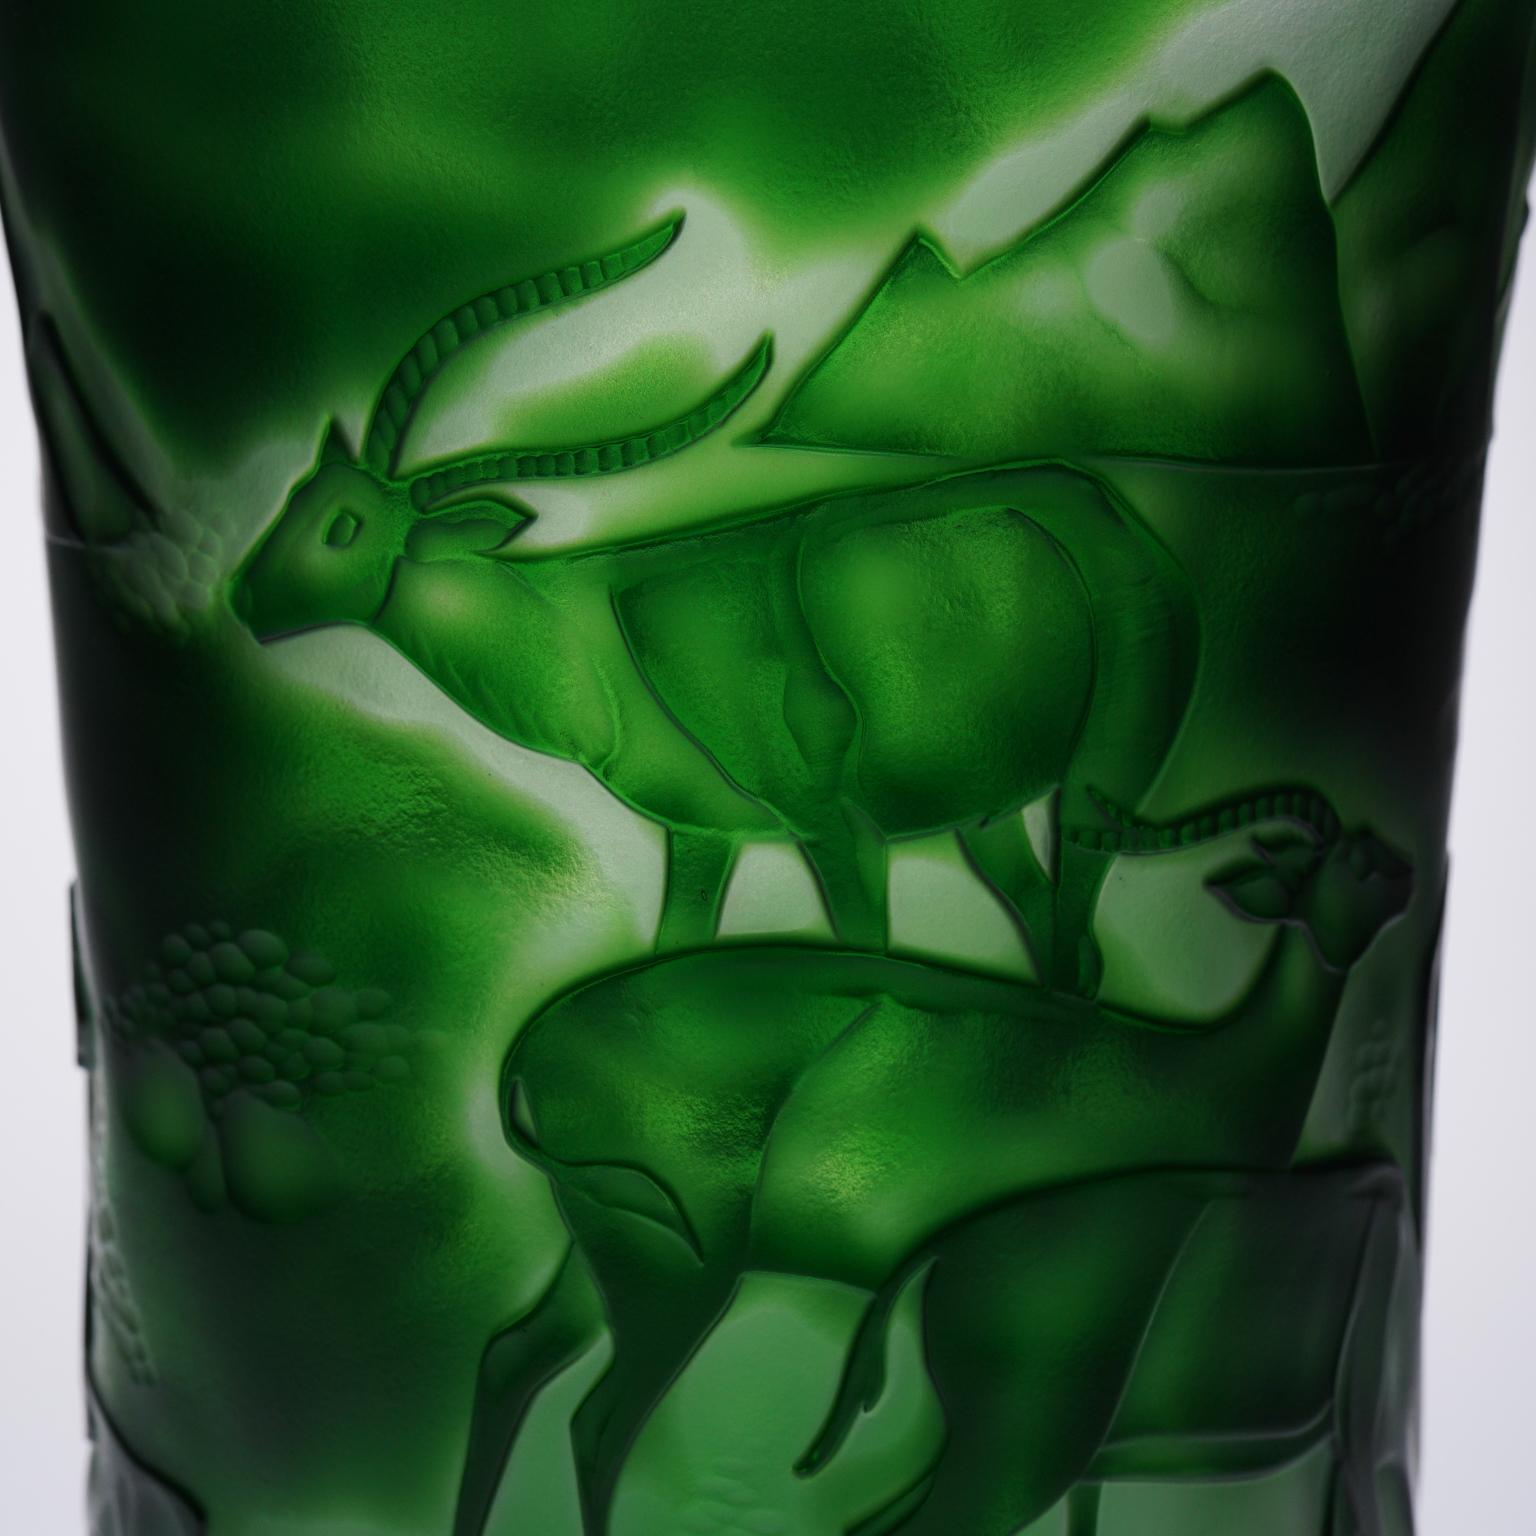 Wunderschöne farbige (dunkelgrüne) Kristallvase mit einzigartigem Design: Darstellung von sauvage Nature, mit Tieren (Panther, Gazelle).

Ein Beispiel für ein großartiges Savoir-faire der Cristallerie de Montbronn in Frankreich.

Das Design ist